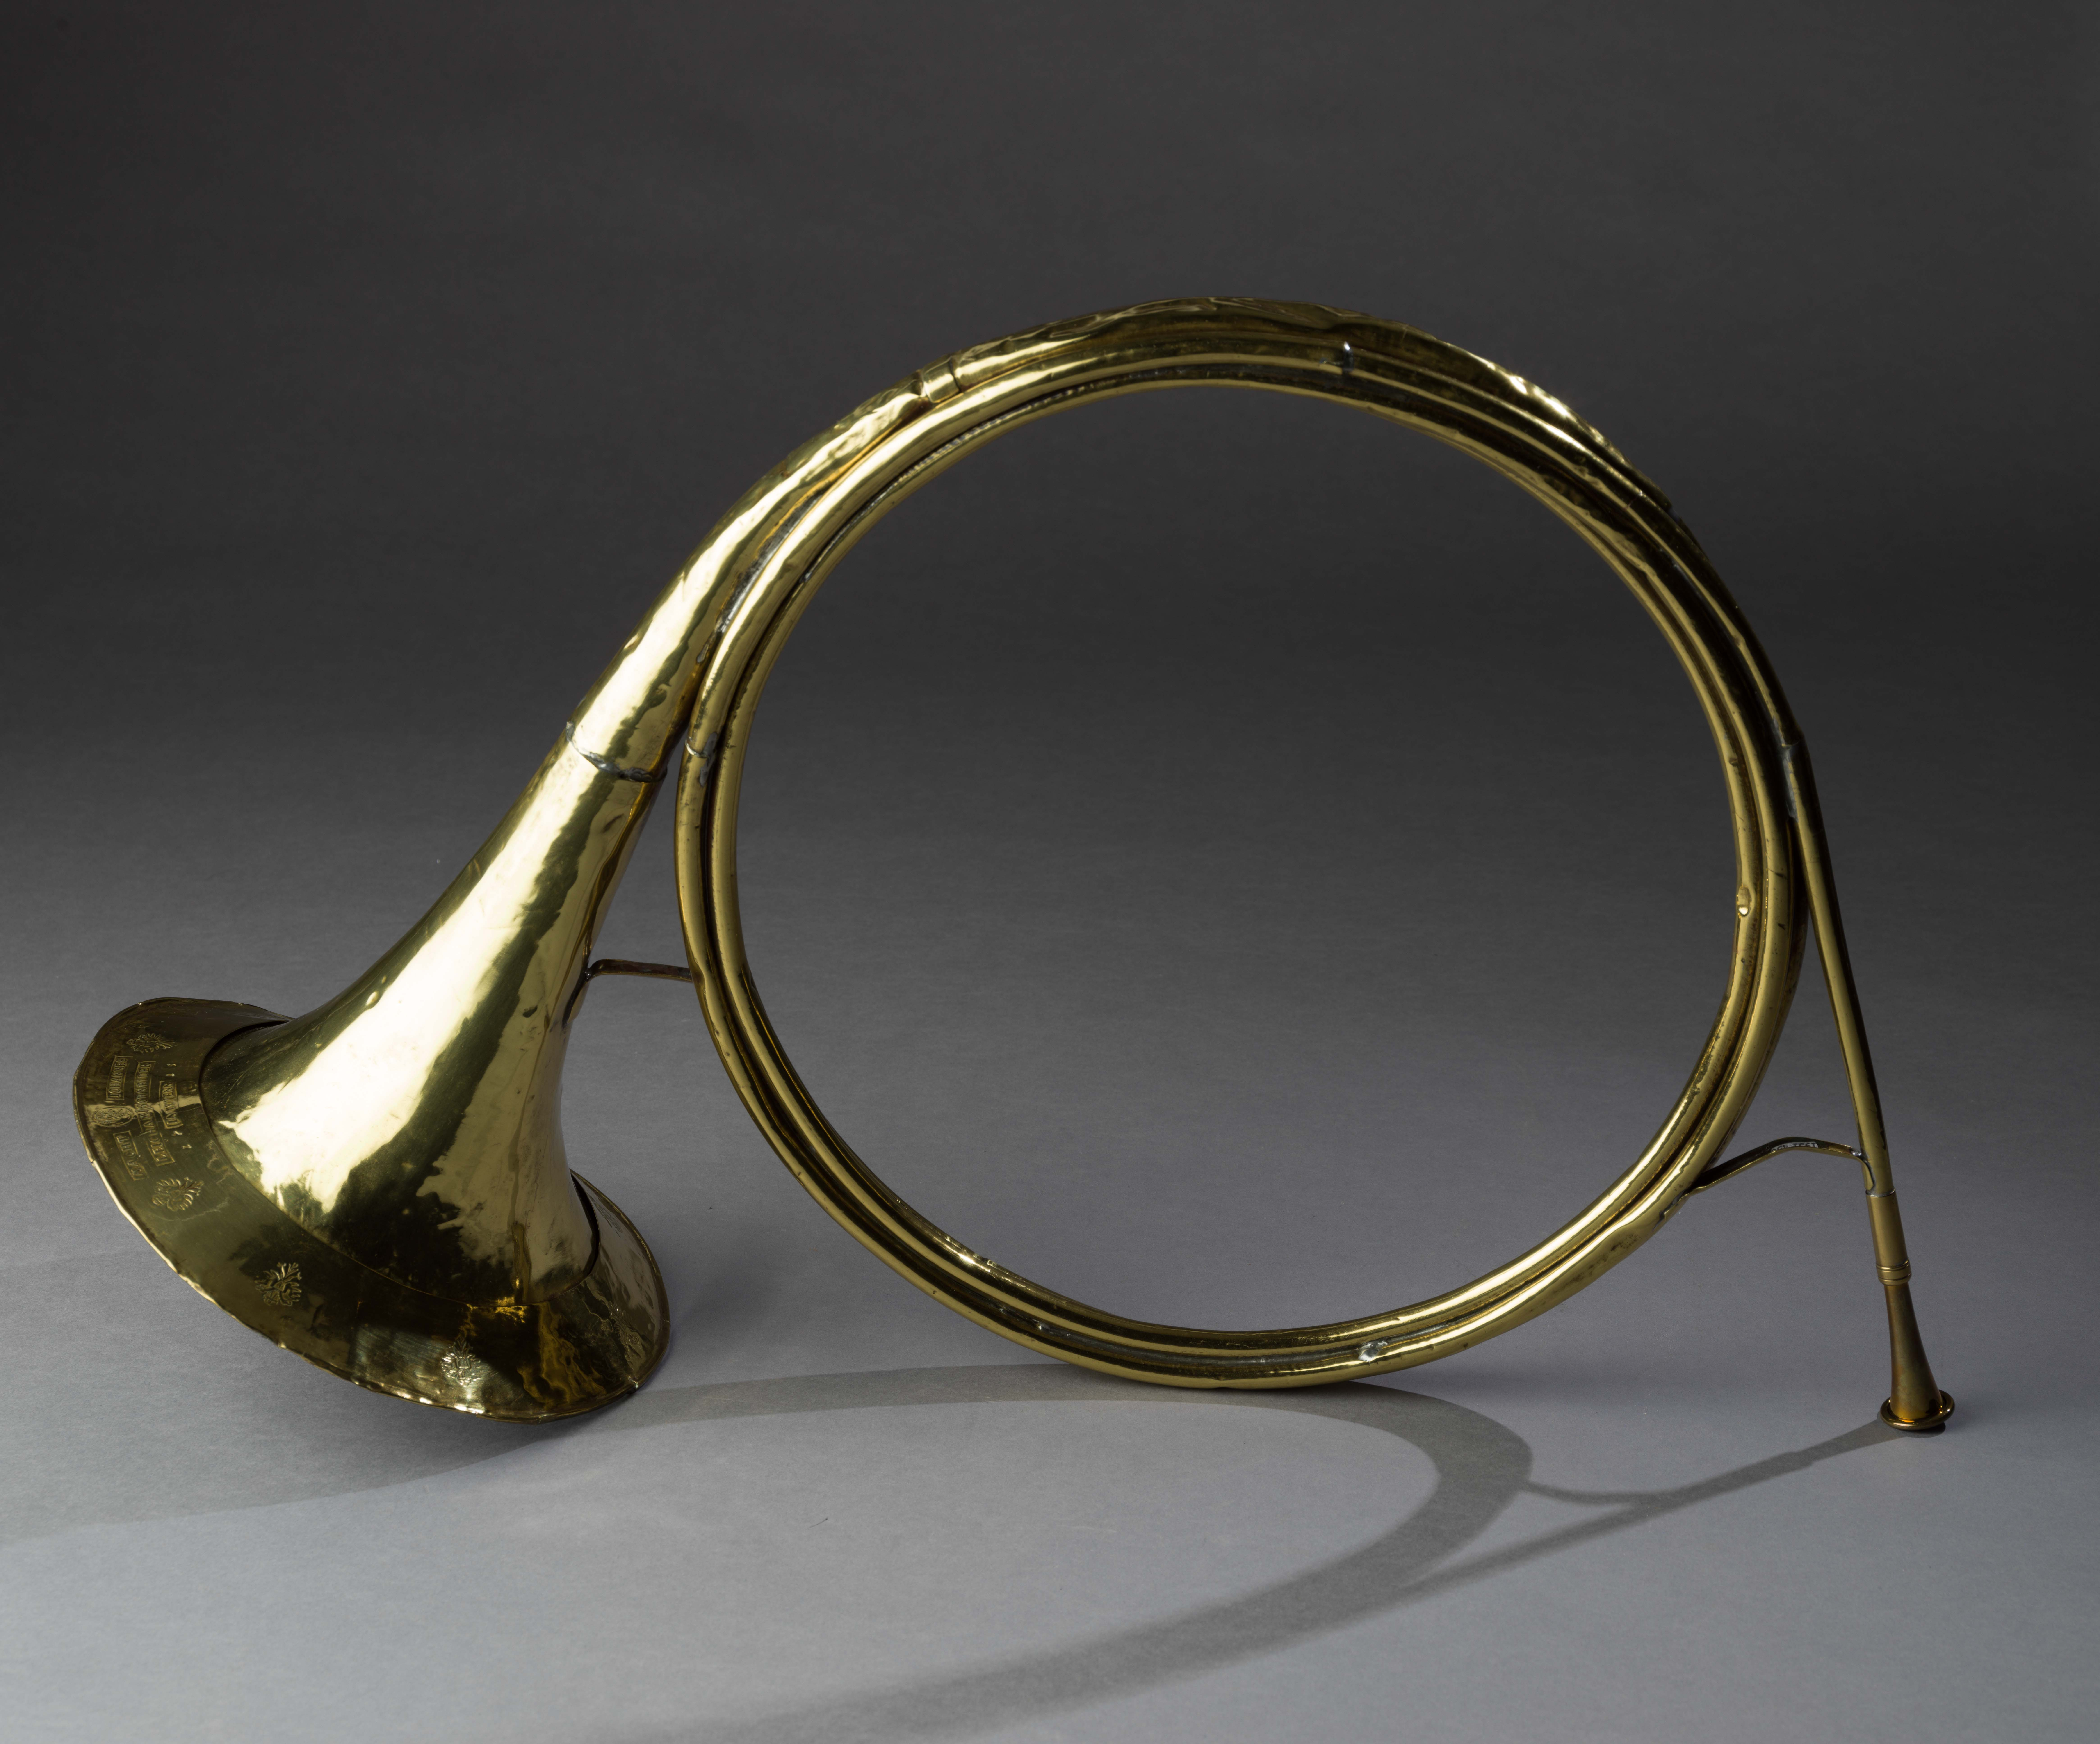 Hunting horn, Johannes Leichamschneider Vienna, Austria, circa 1715. Brass. Museum purchase, 1951-456 